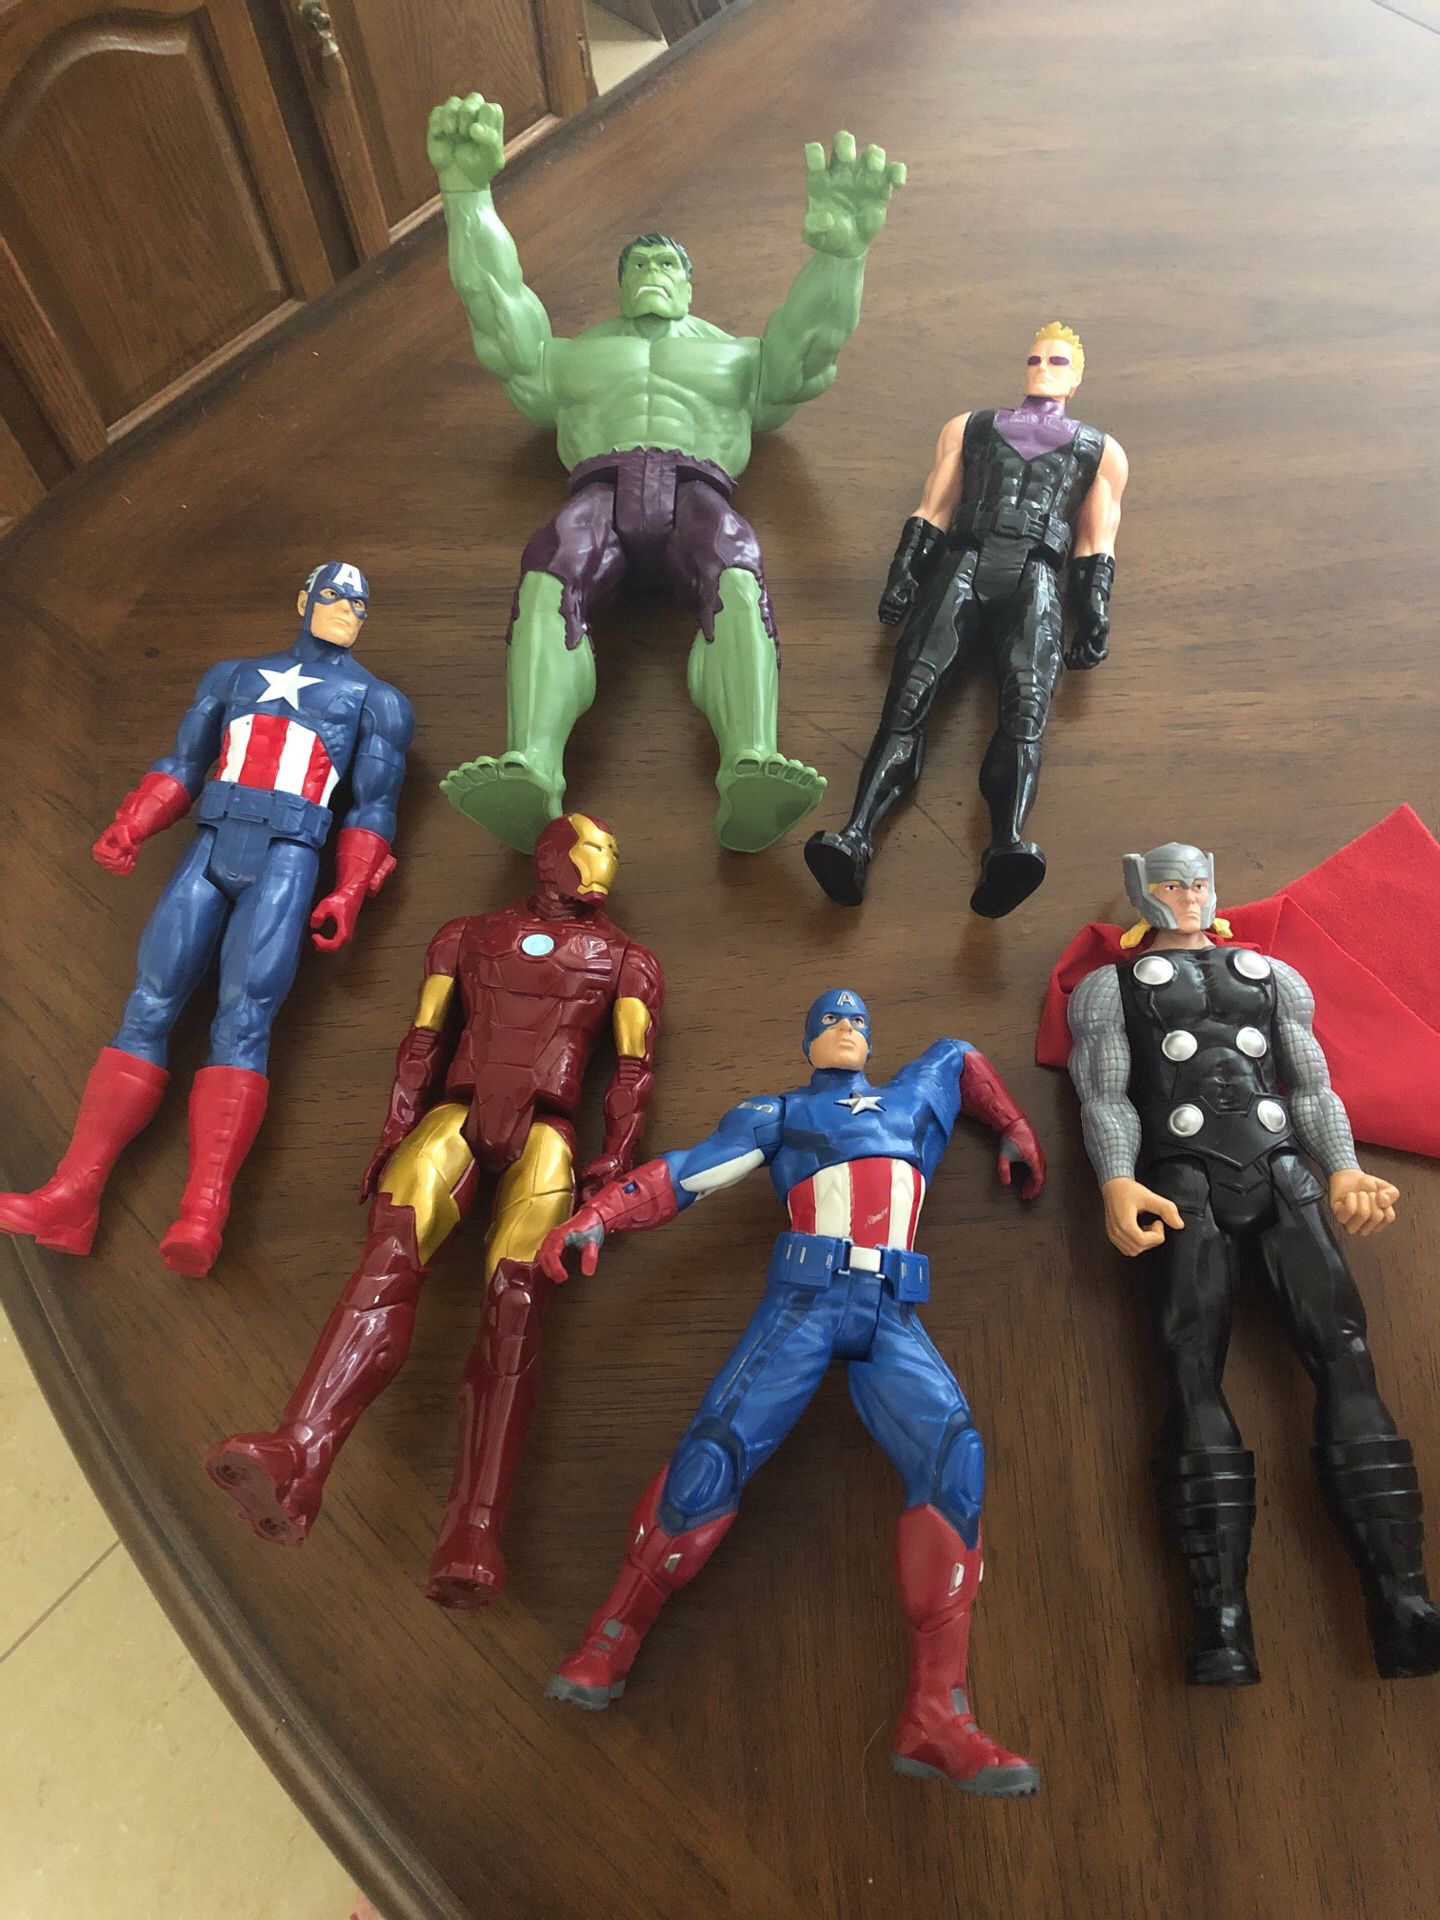 Marvel Action Figure Toys (6pcs)